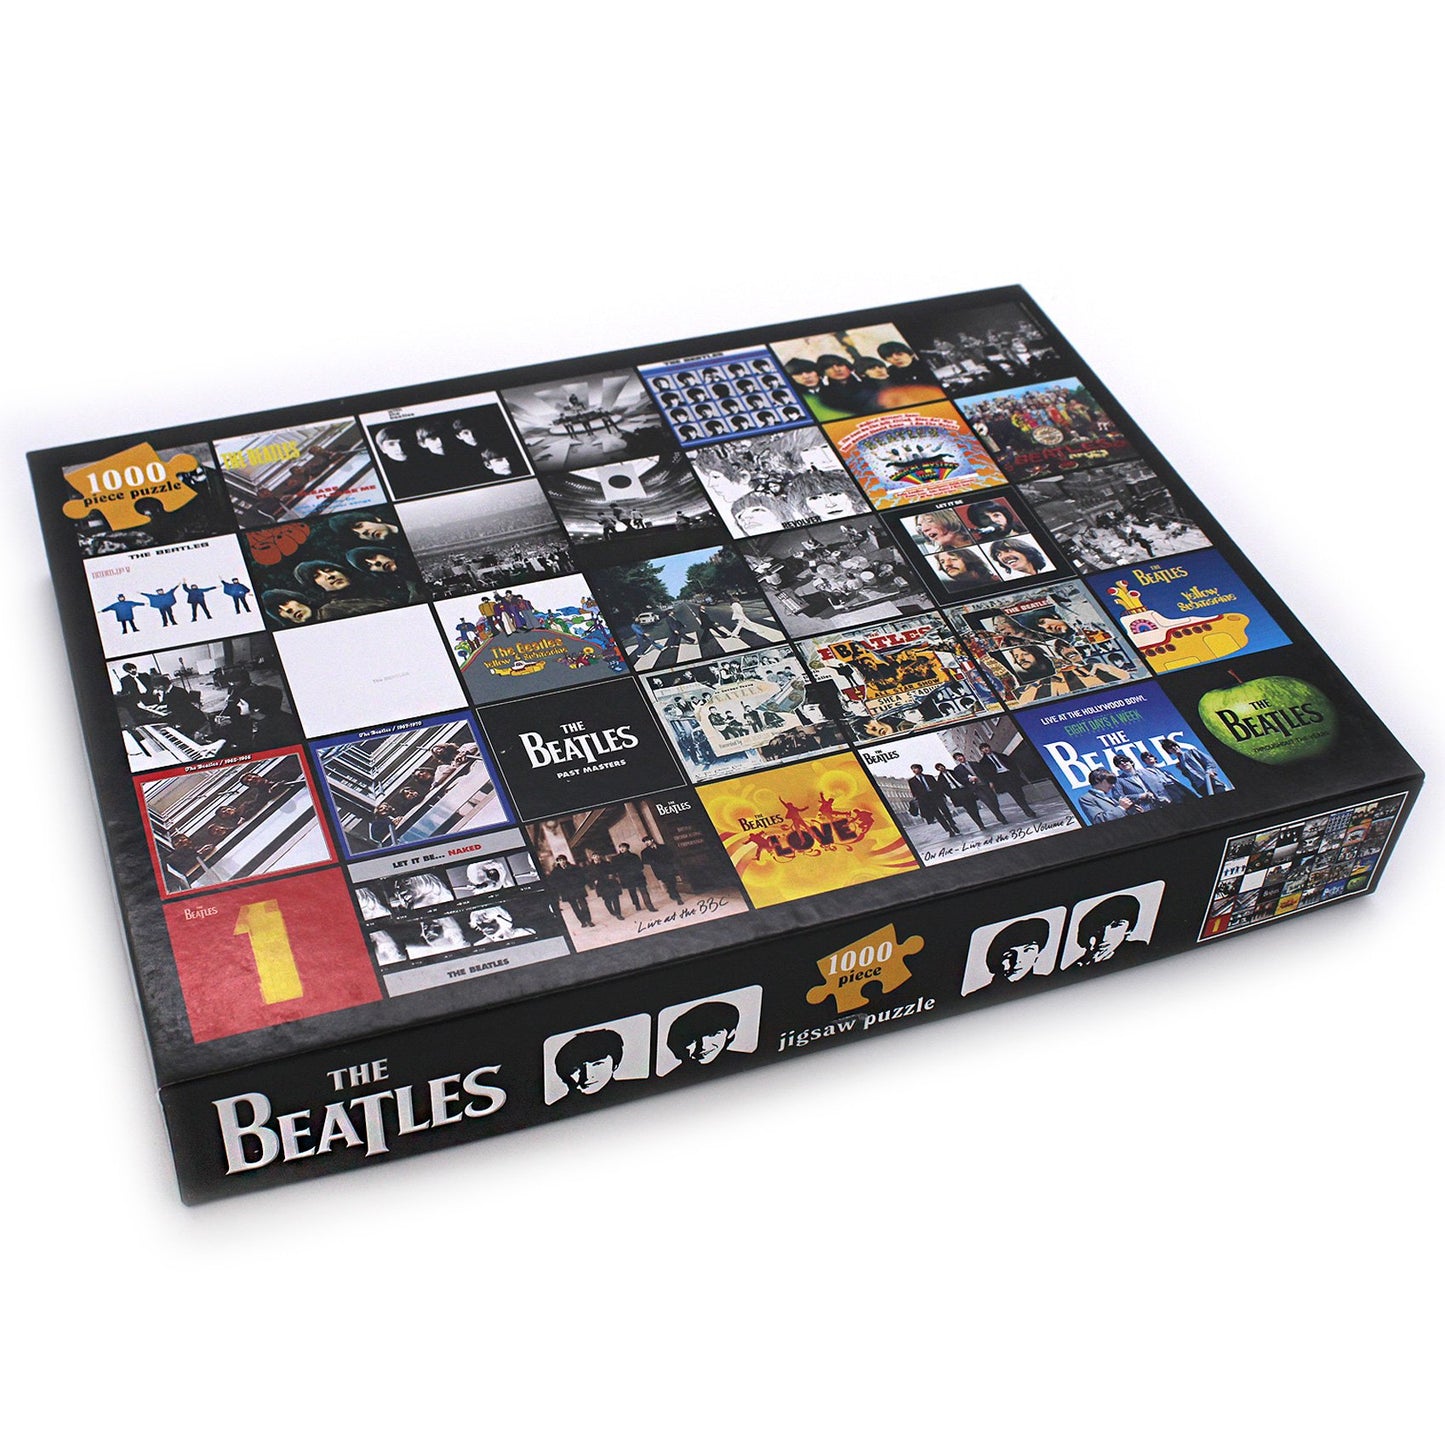 The Beatles - Albumomslag, 1000 brikker puslespil